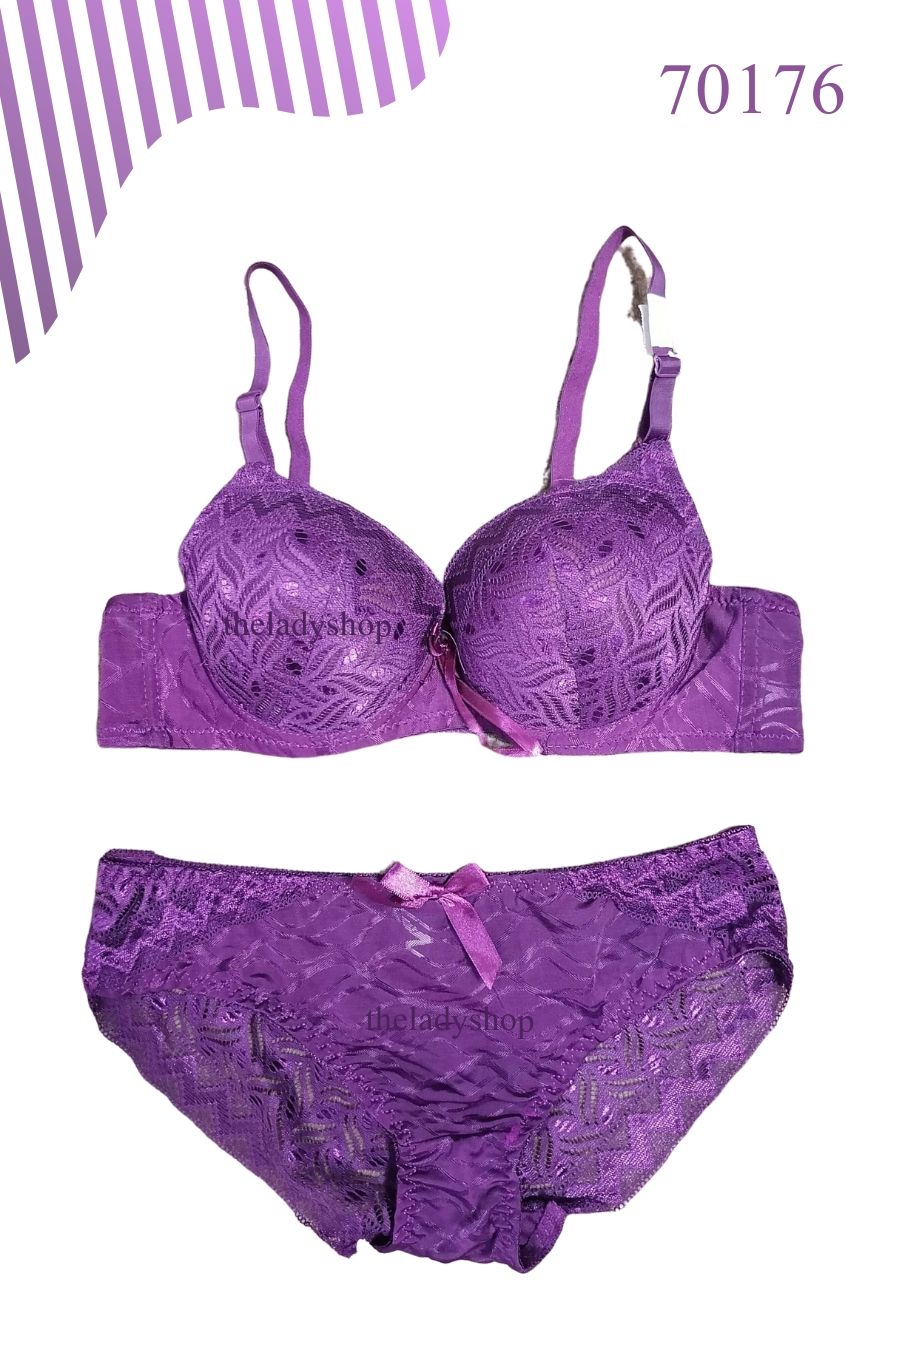 2pc fancy lace bra & panty set - Purple